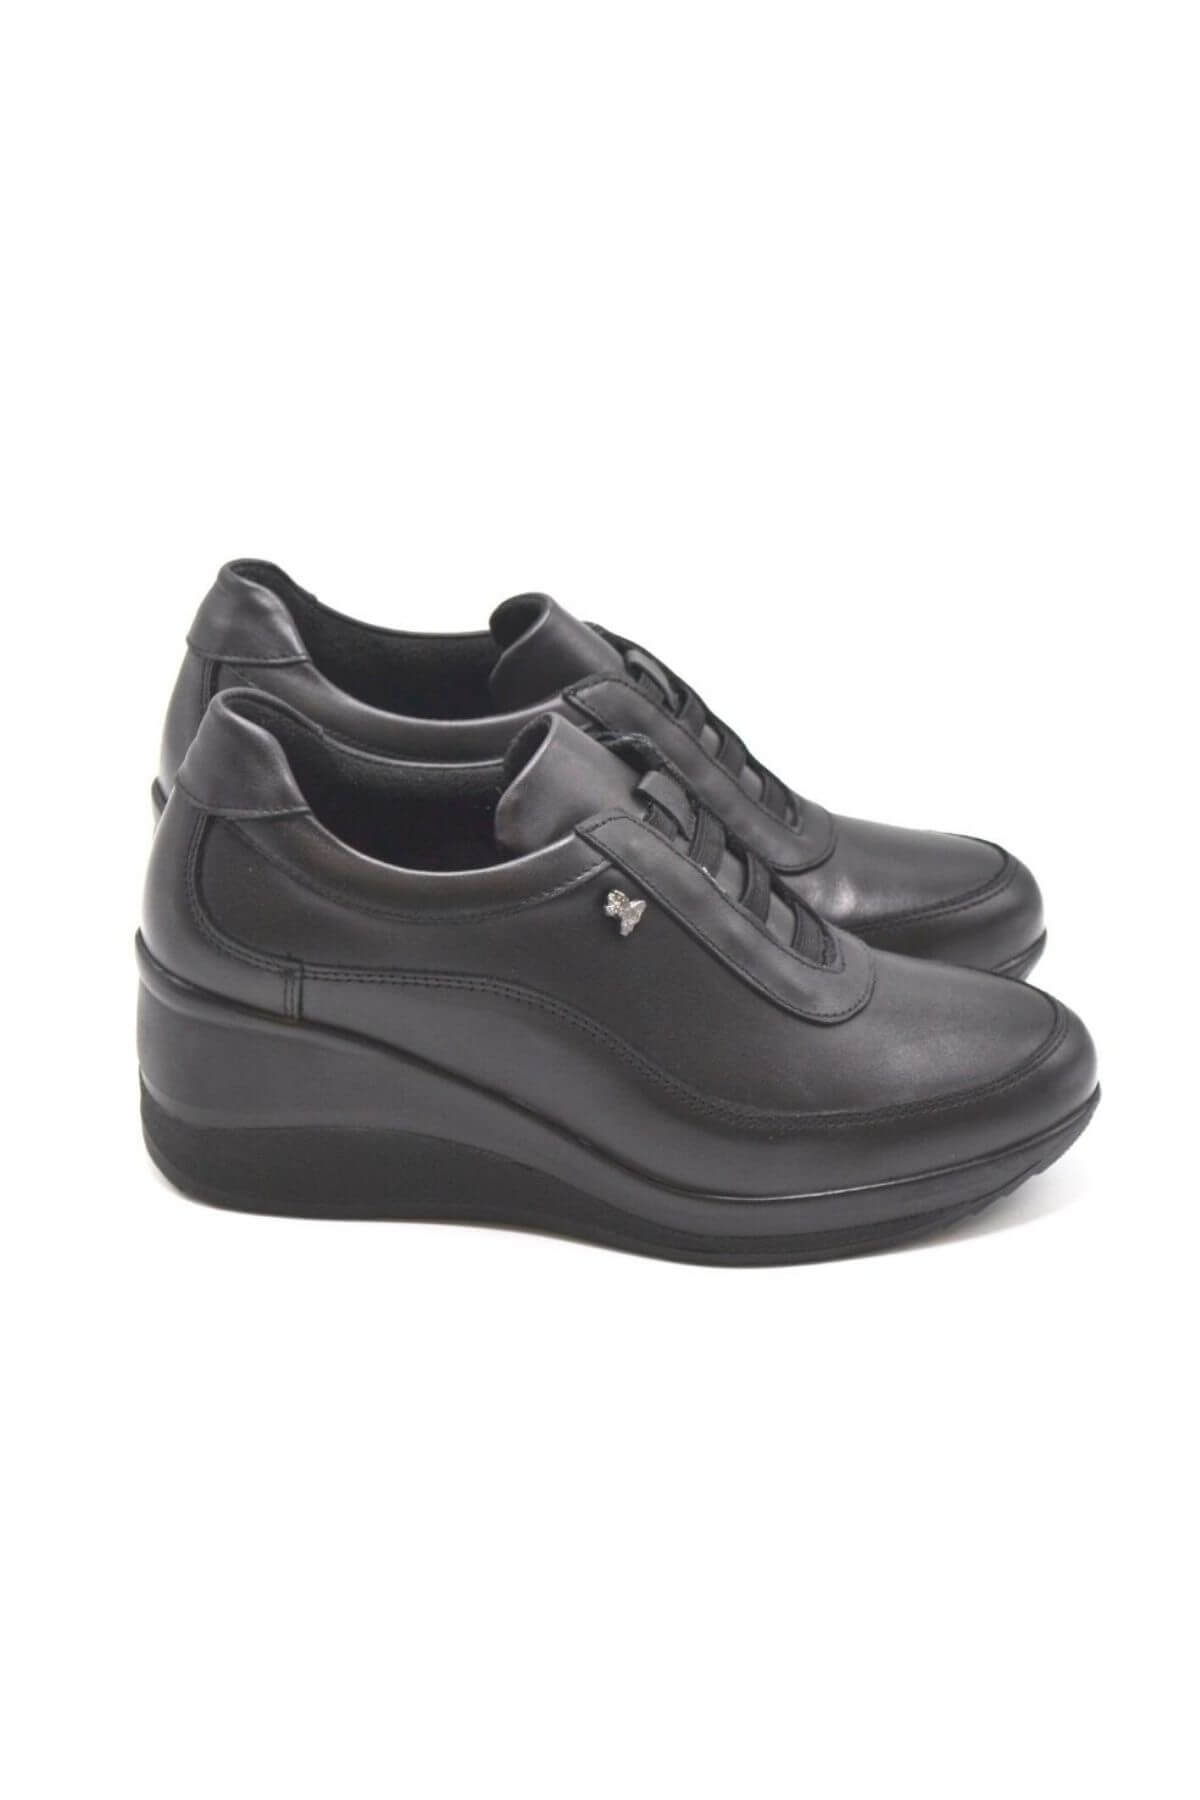 Kadın Dolgu Topuk Deri Ayakkabı Siyah 2111520K